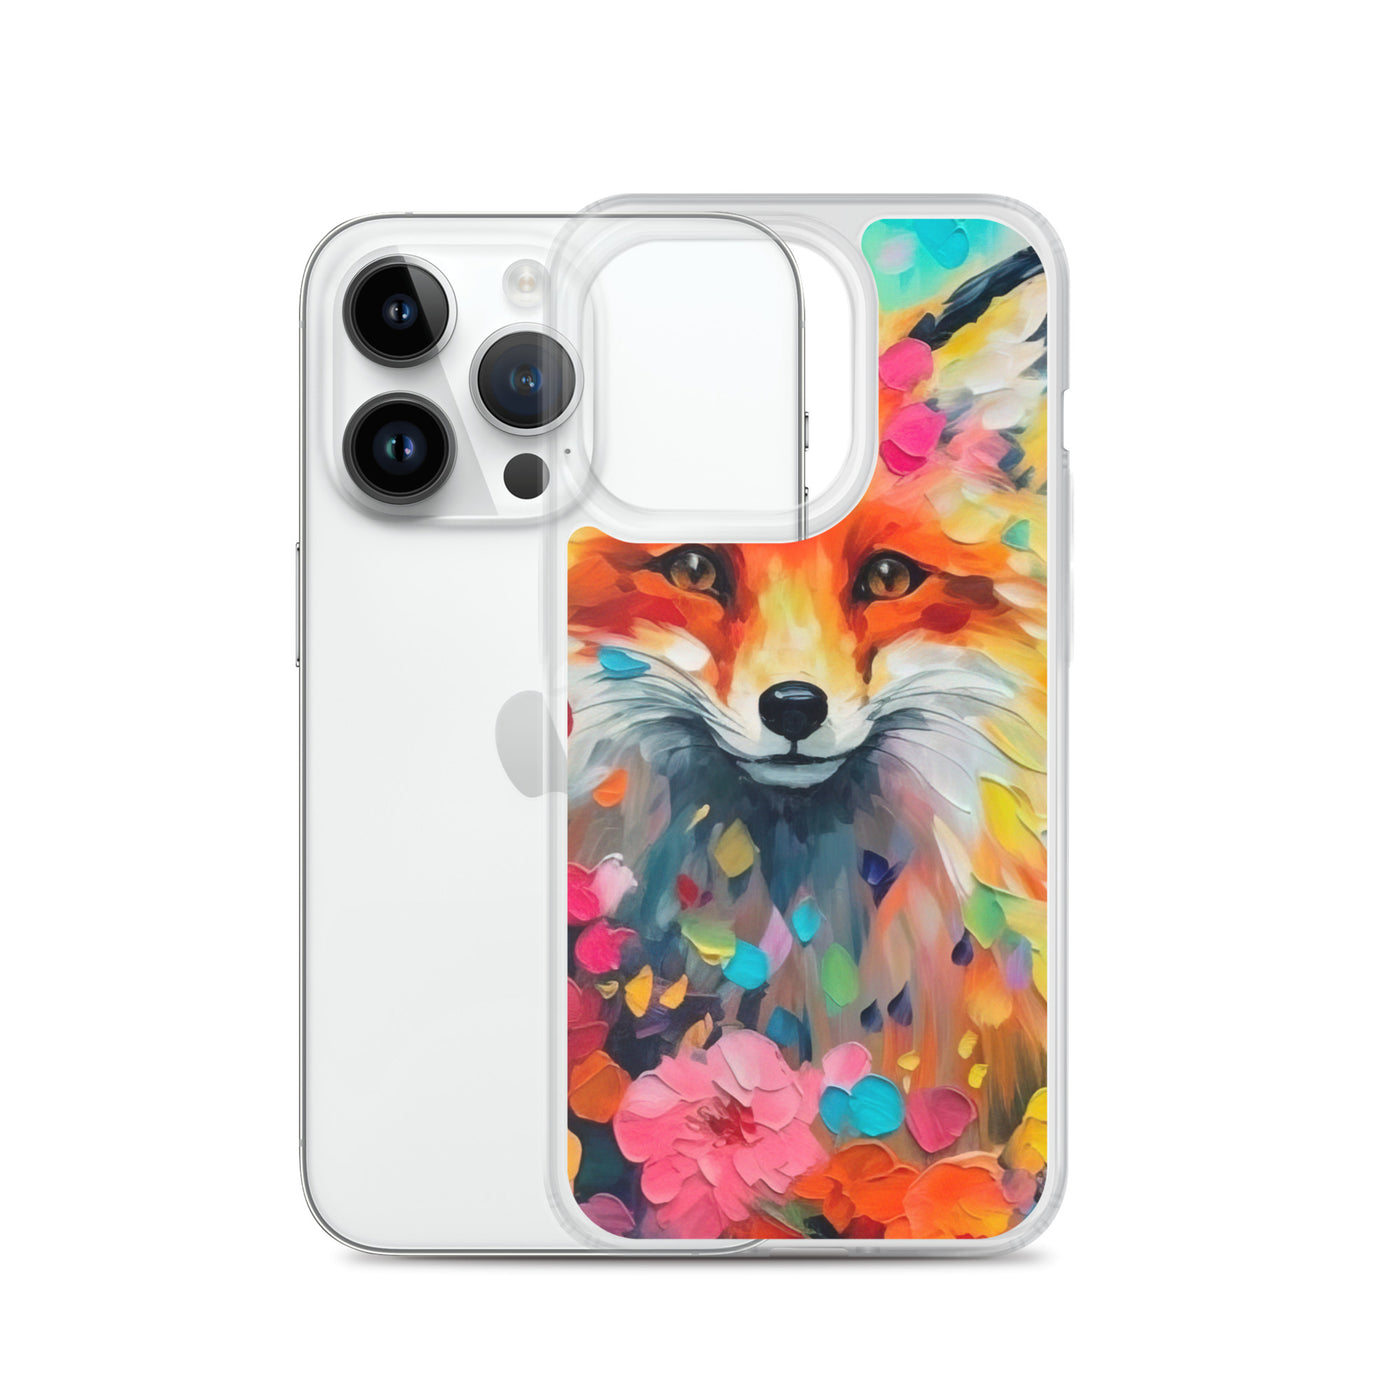 Schöner Fuchs im Blumenfeld - Farbige Malerei - iPhone Schutzhülle (durchsichtig) camping xxx